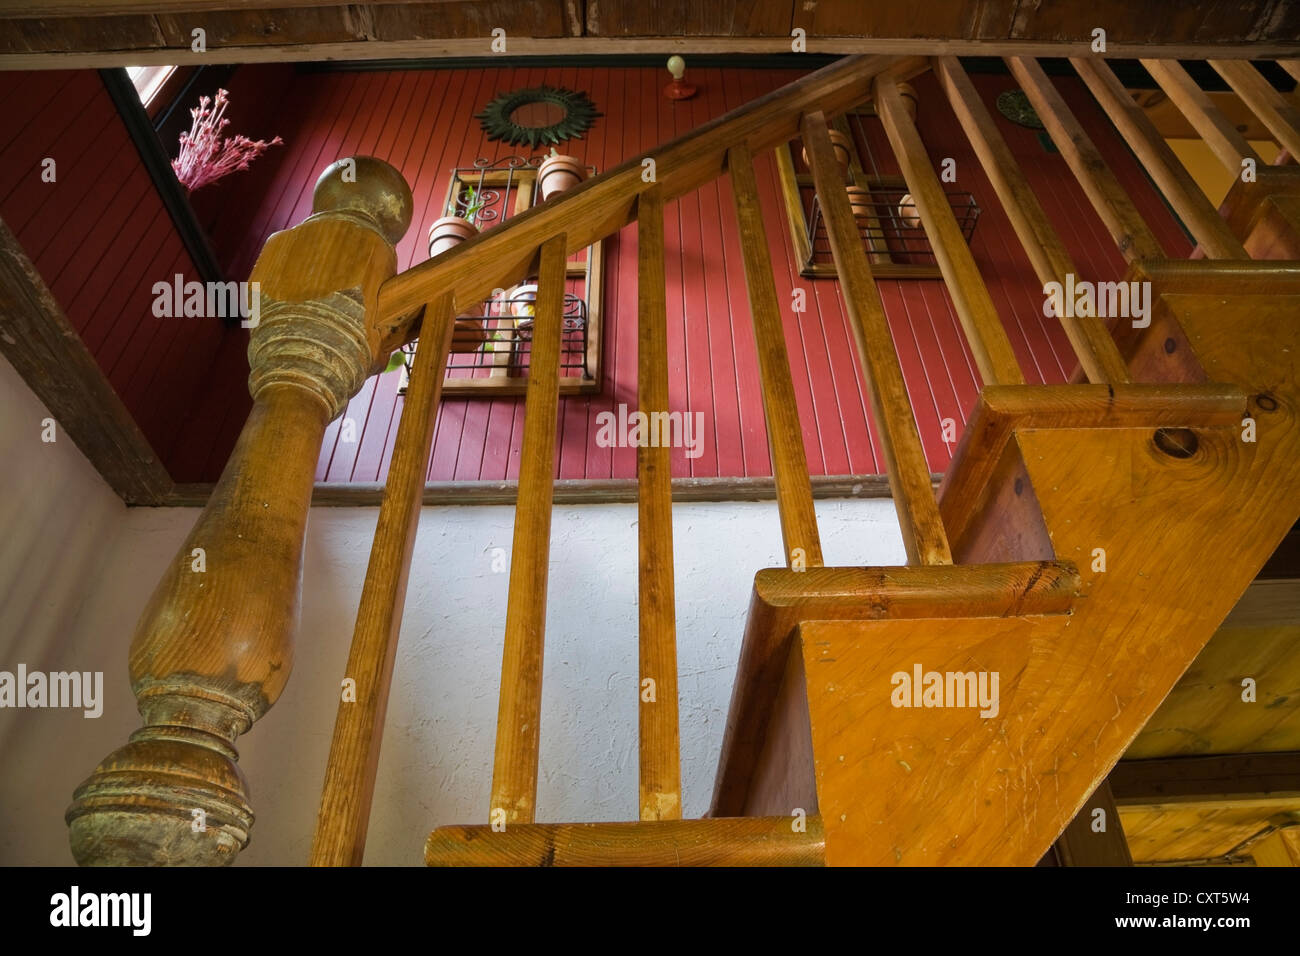 Gros plan de l'ensemble de balustres et balustrades dans un vieux escalier en bois dans une ancienne résidence de style cottage Canadiana log home, vers Banque D'Images